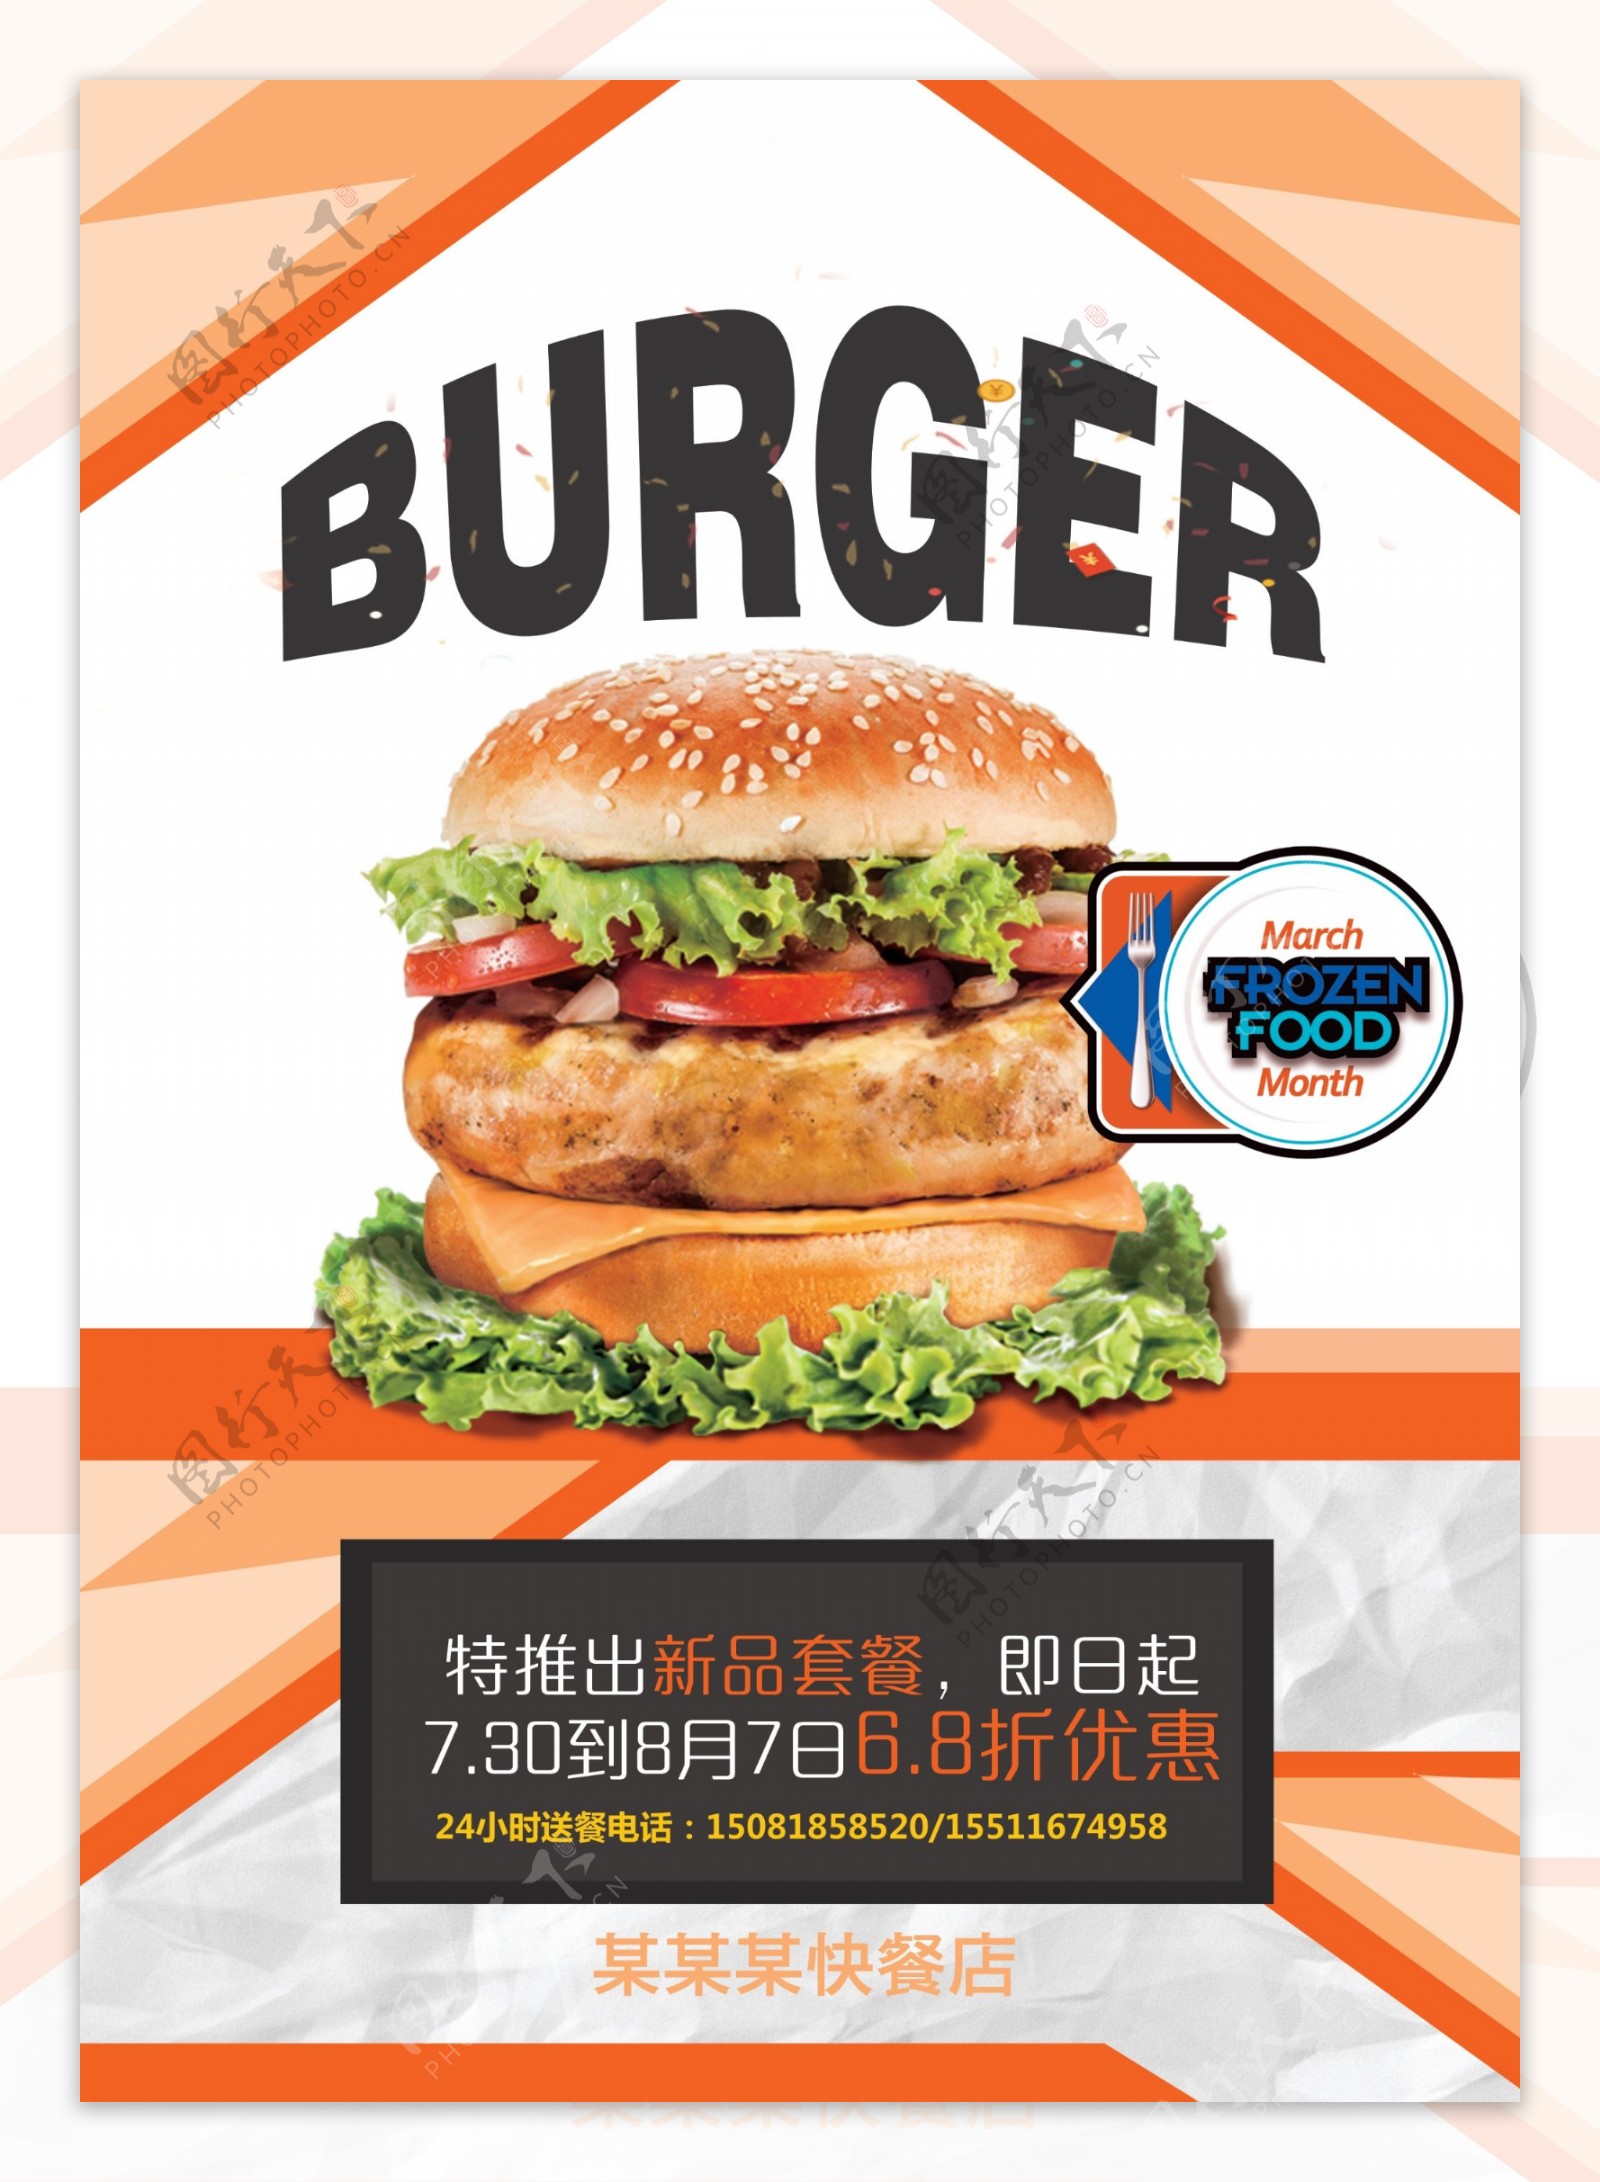 炸鸡汉堡快餐店菜单海报设计